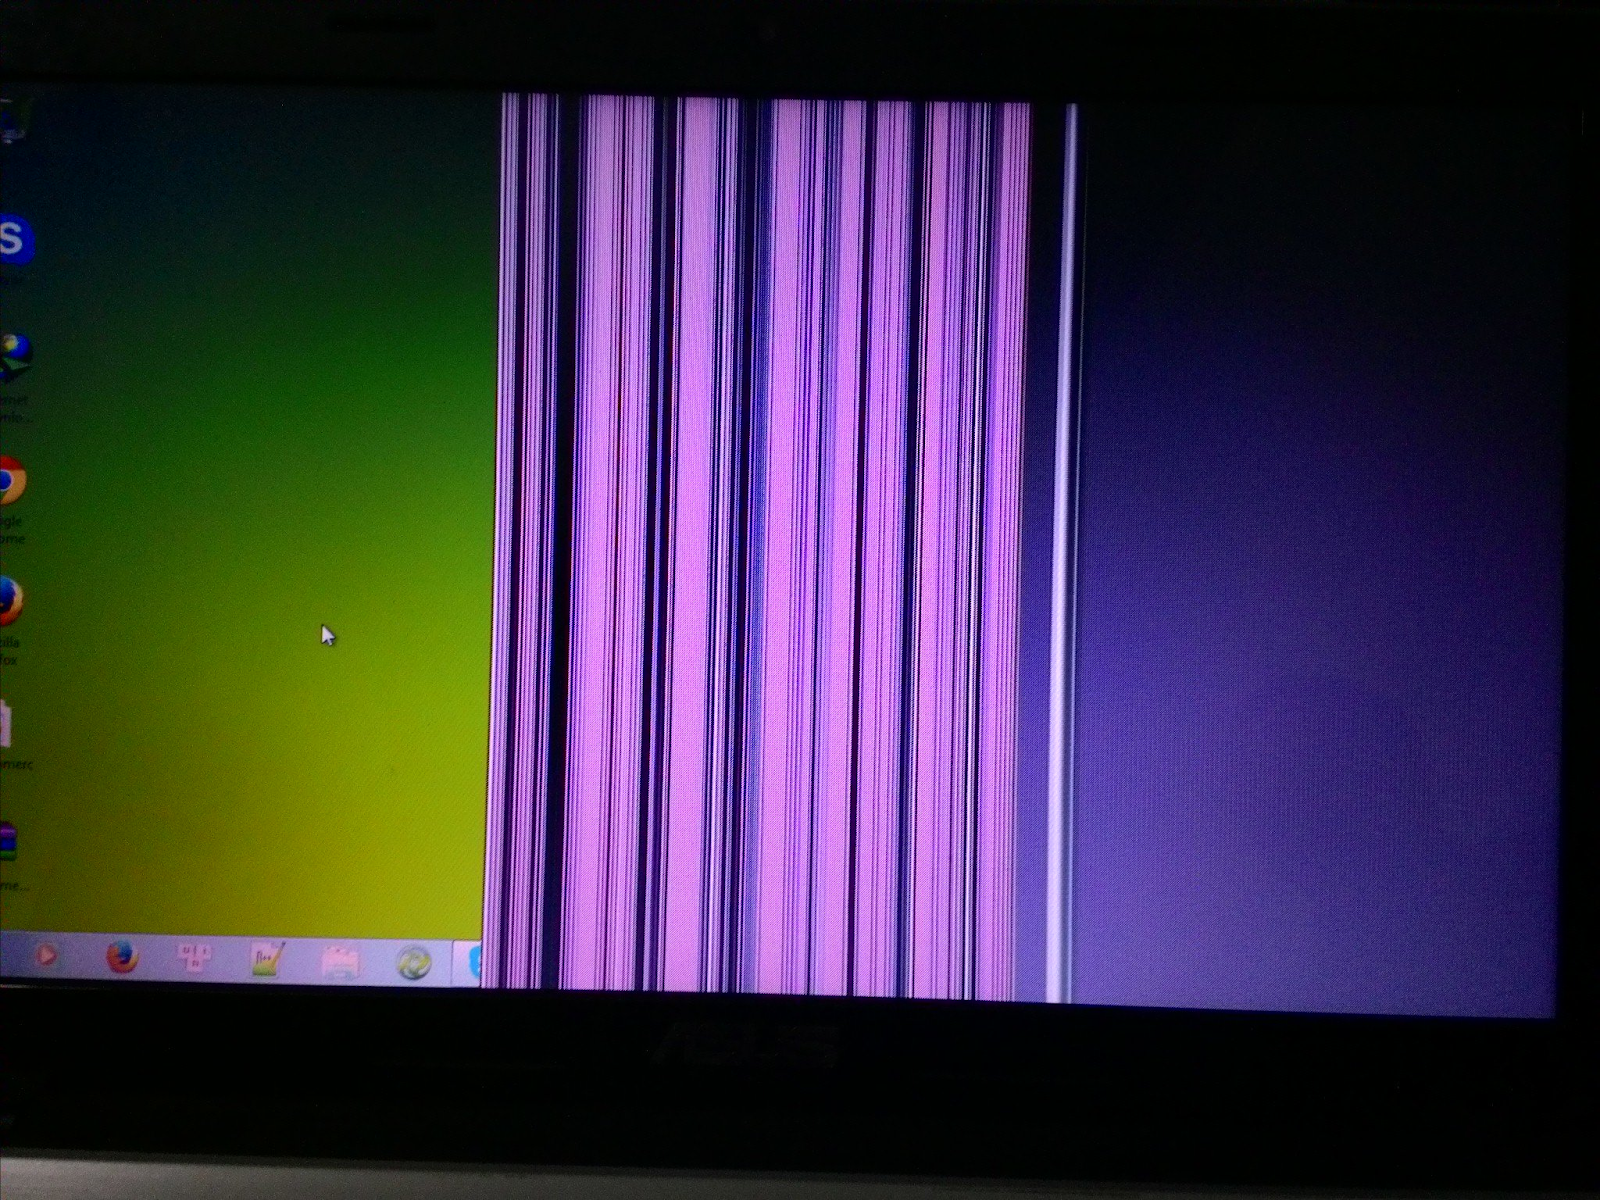 Sửa màn hình laptop bị sọc , đen , ngang bắc ninh chi phí bao nhiêu